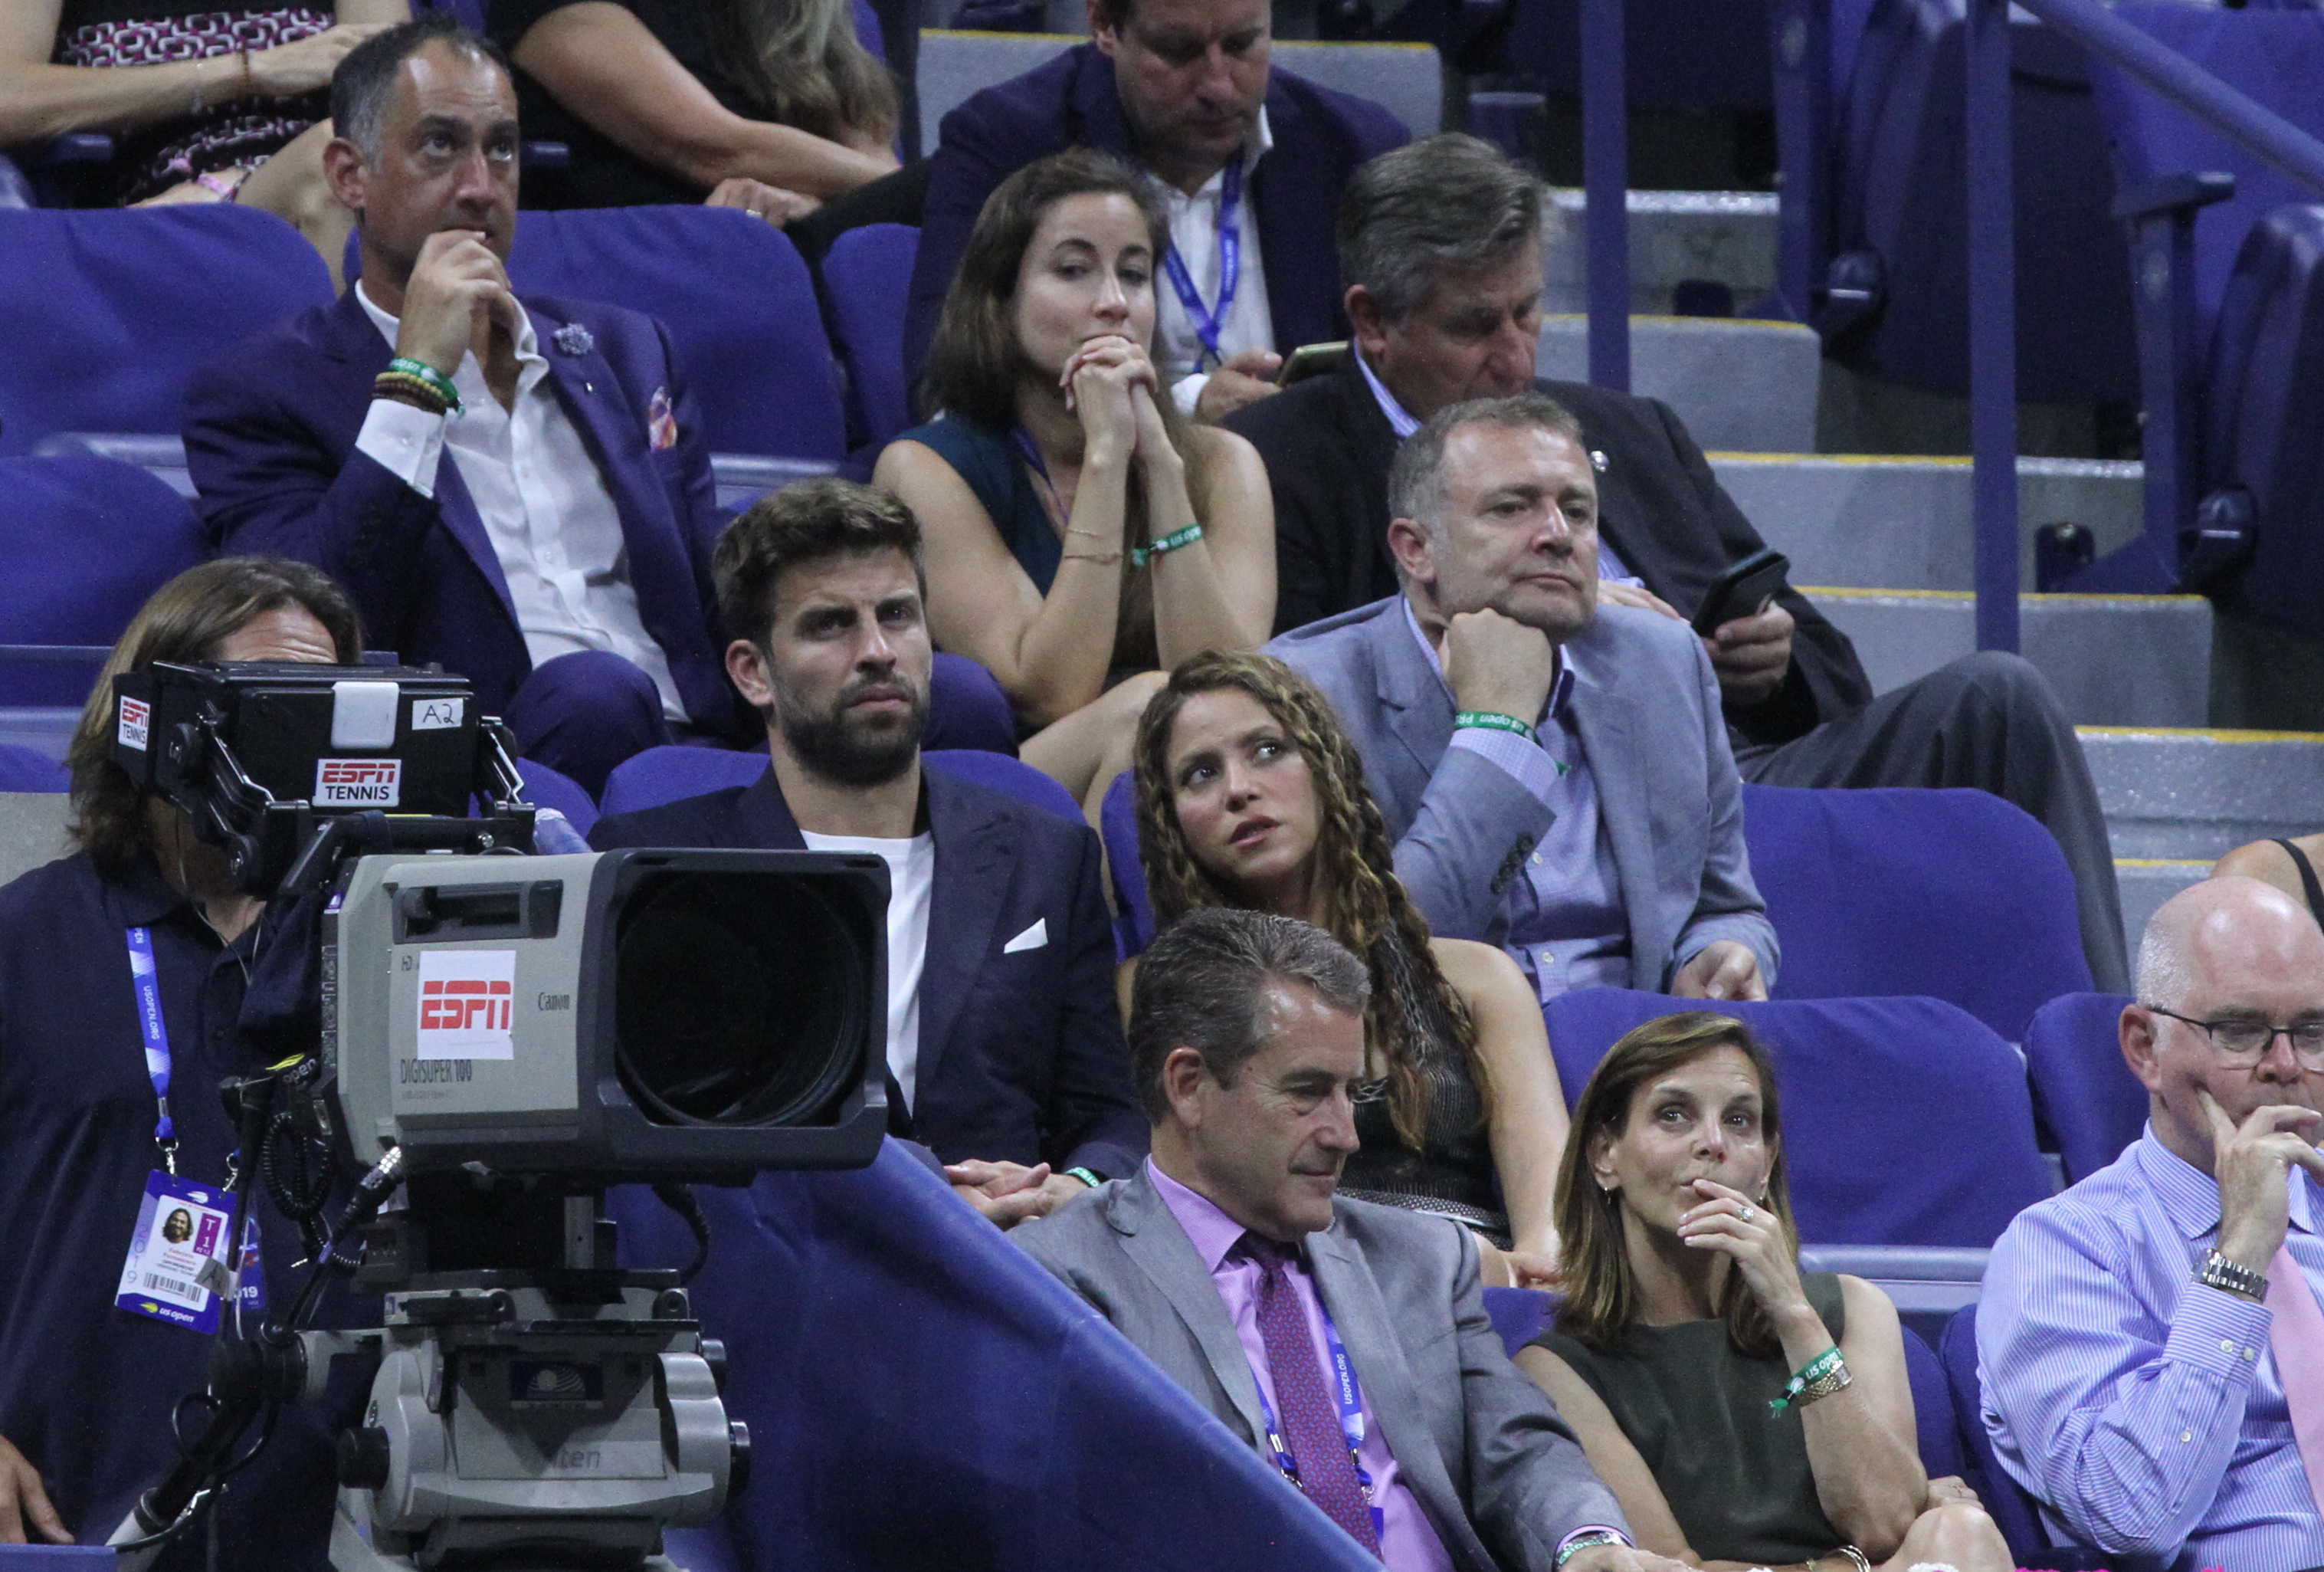 Piqué y Shakira en el palco presidencial. / Foto: Mariela Lombard, El Diario NY